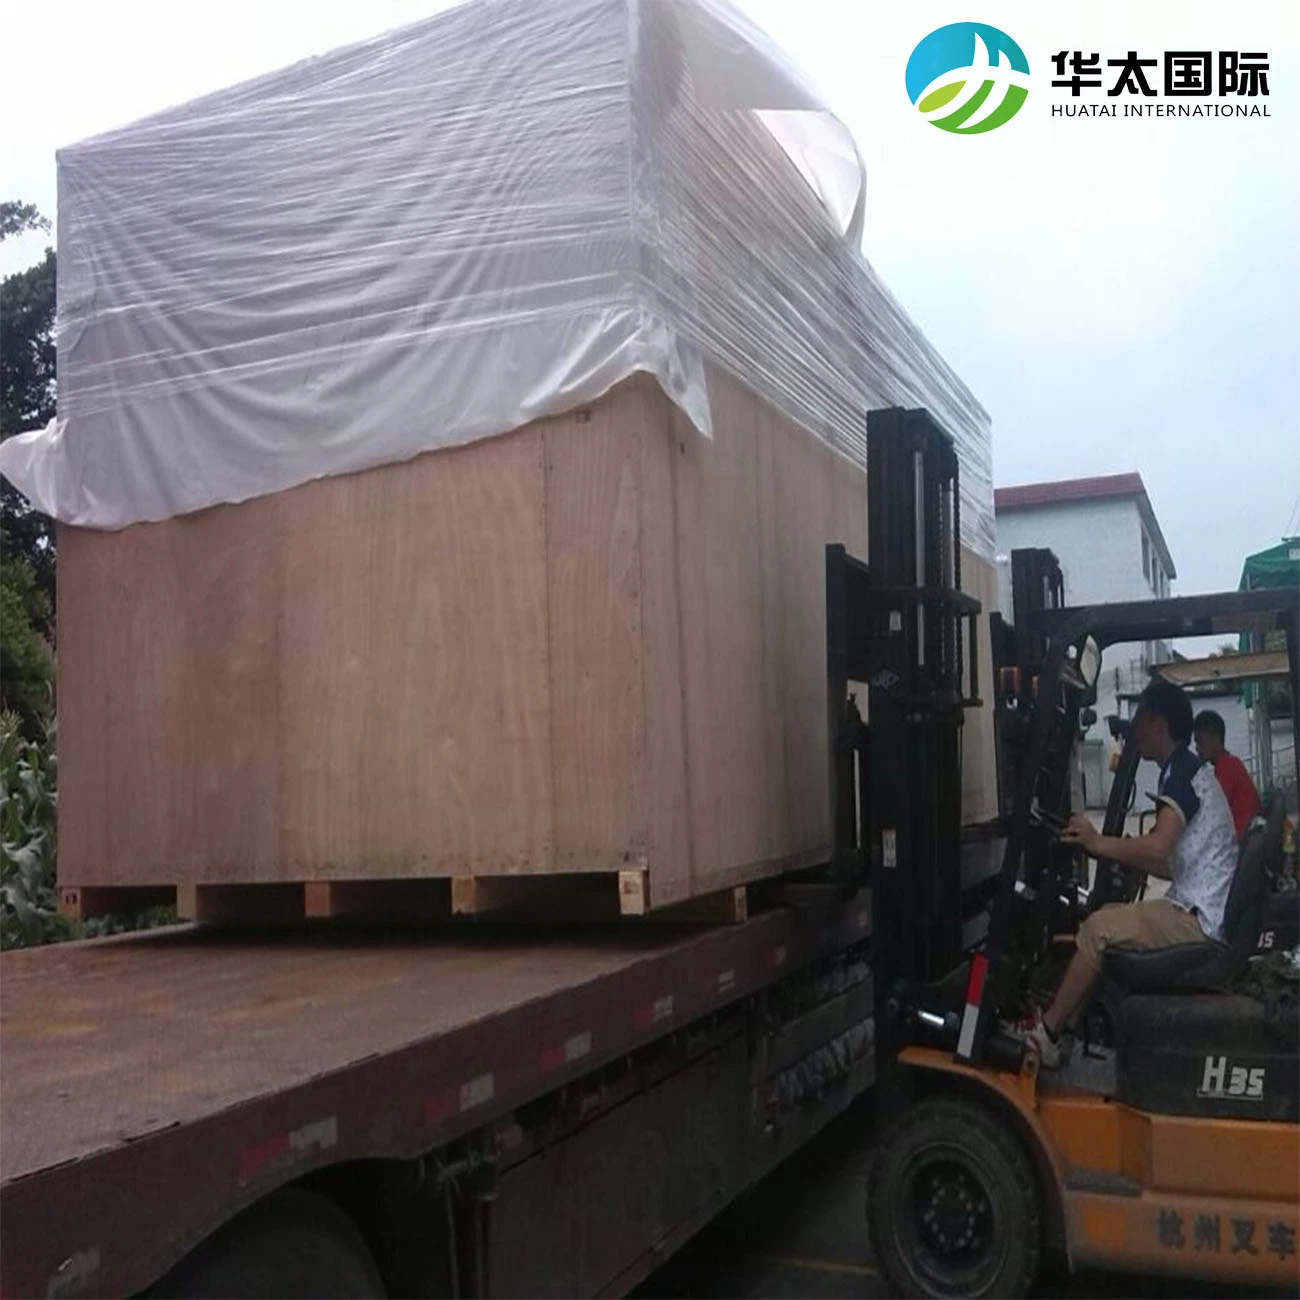 From China to UK International Logistics Large Cargo Transportation Shipping Cargo